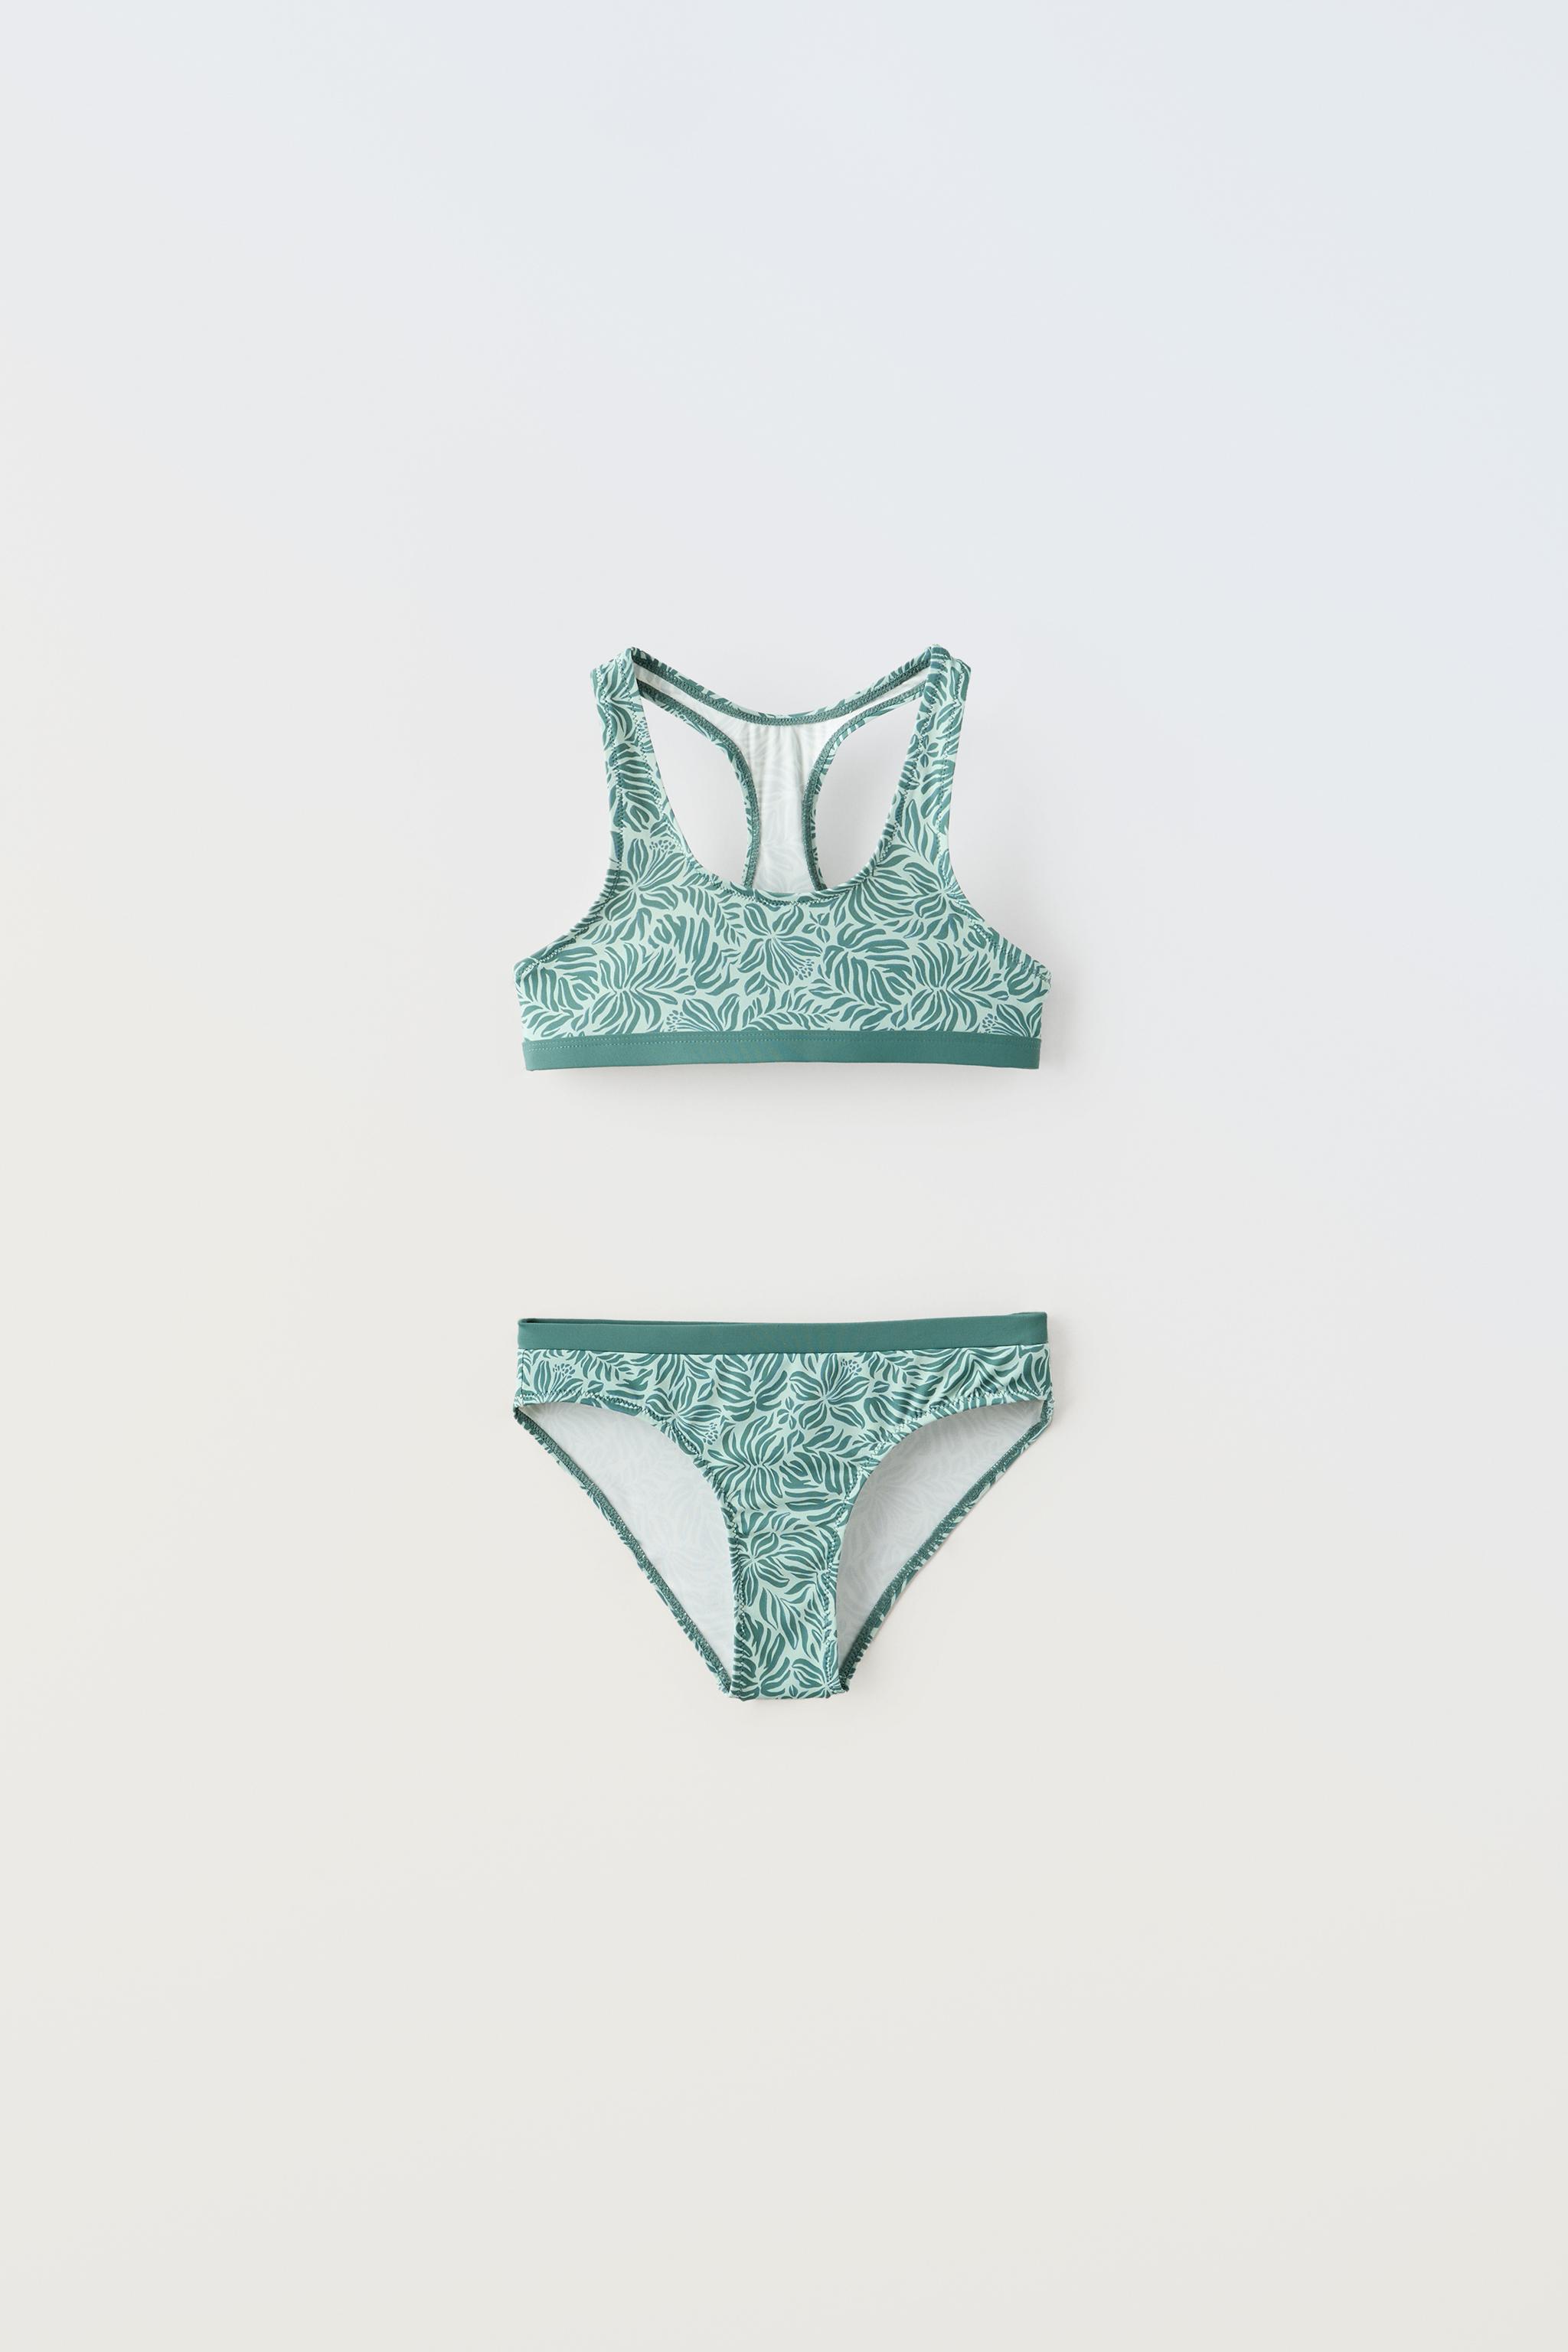 Cinta Elástica para Bikinis/Bañadores - Verde Azulado